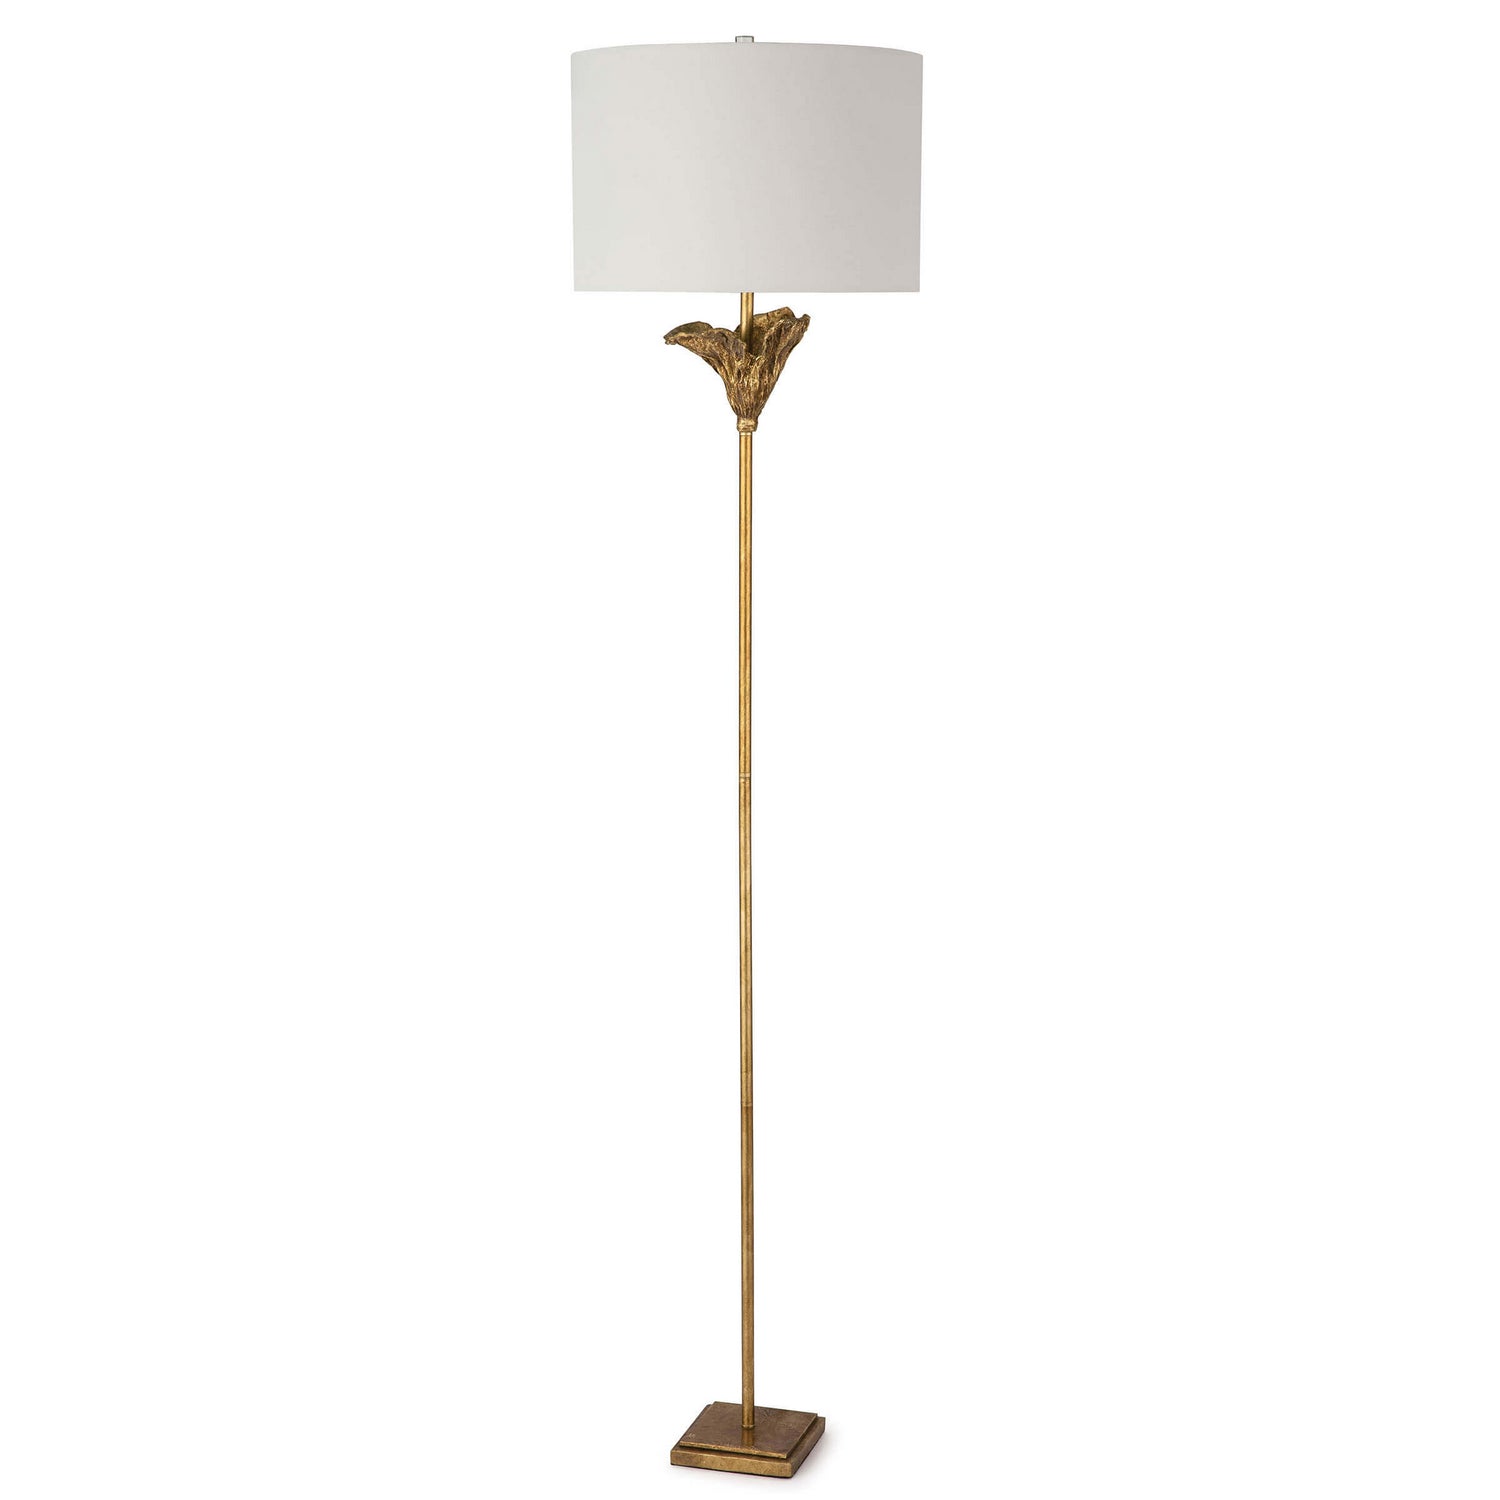 Regina Andrew - 14-1037 - One Light Floor Lamp - Monet - Antique Gold Leaf